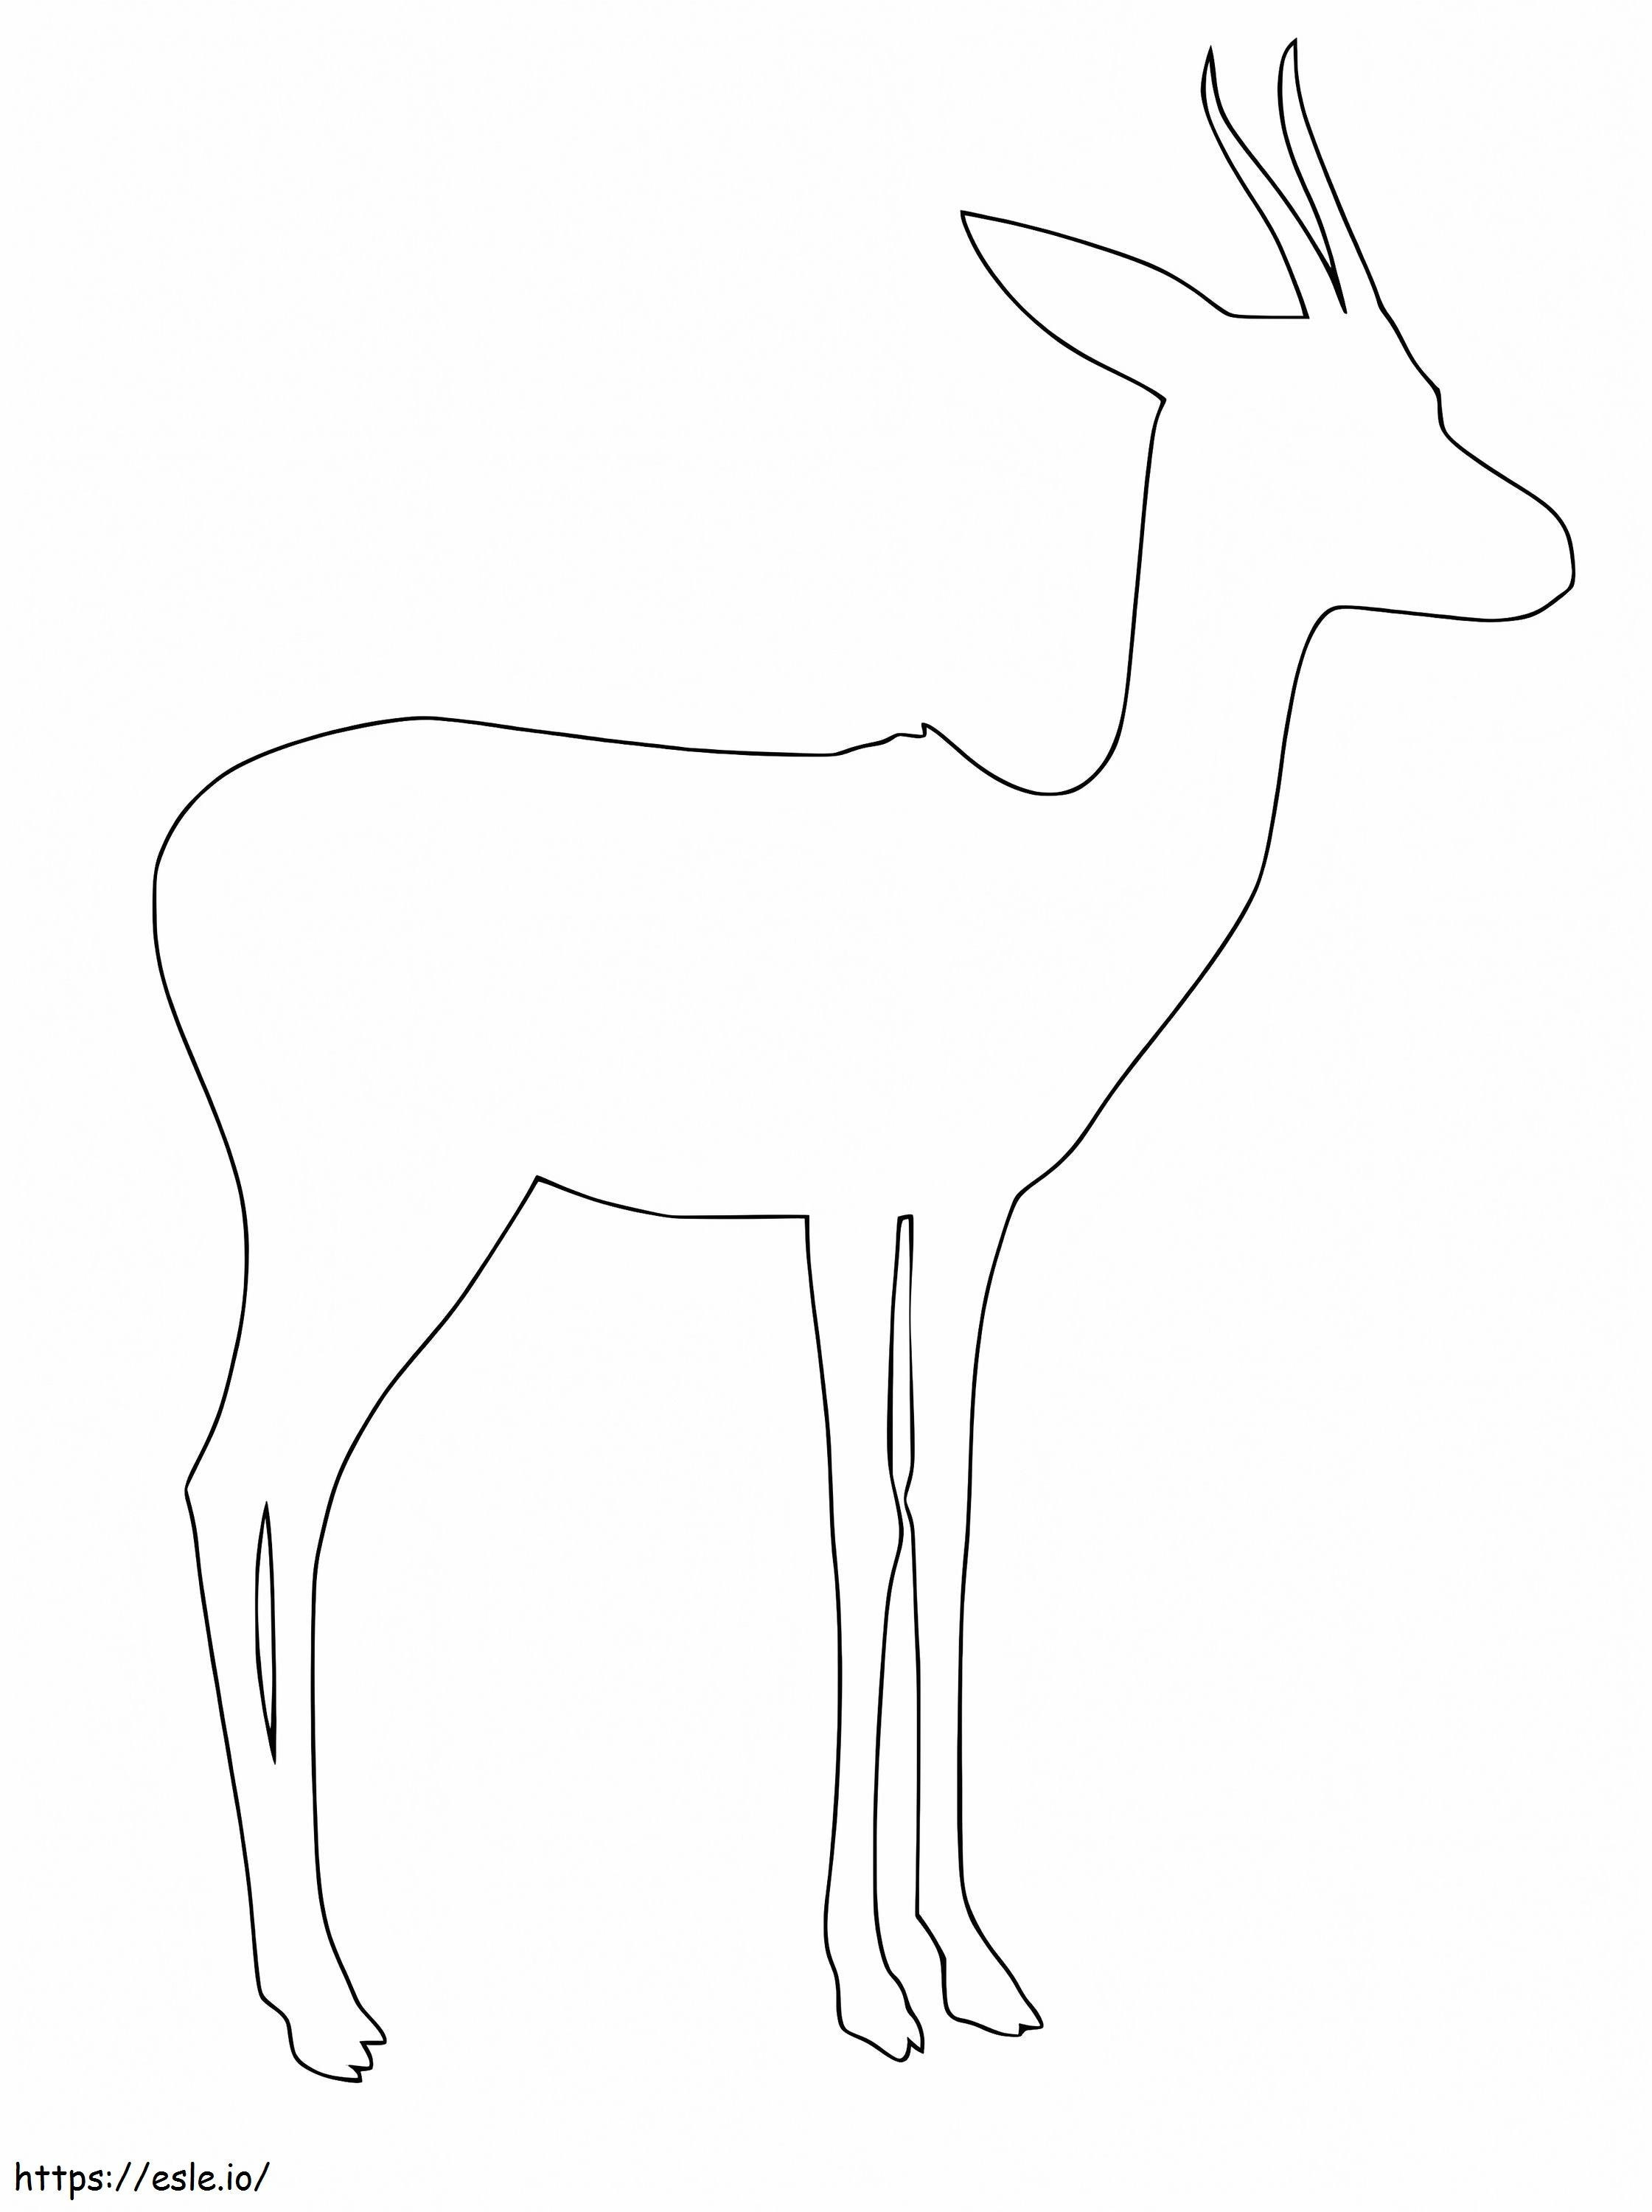 Gazelle-Umriss ausmalbilder